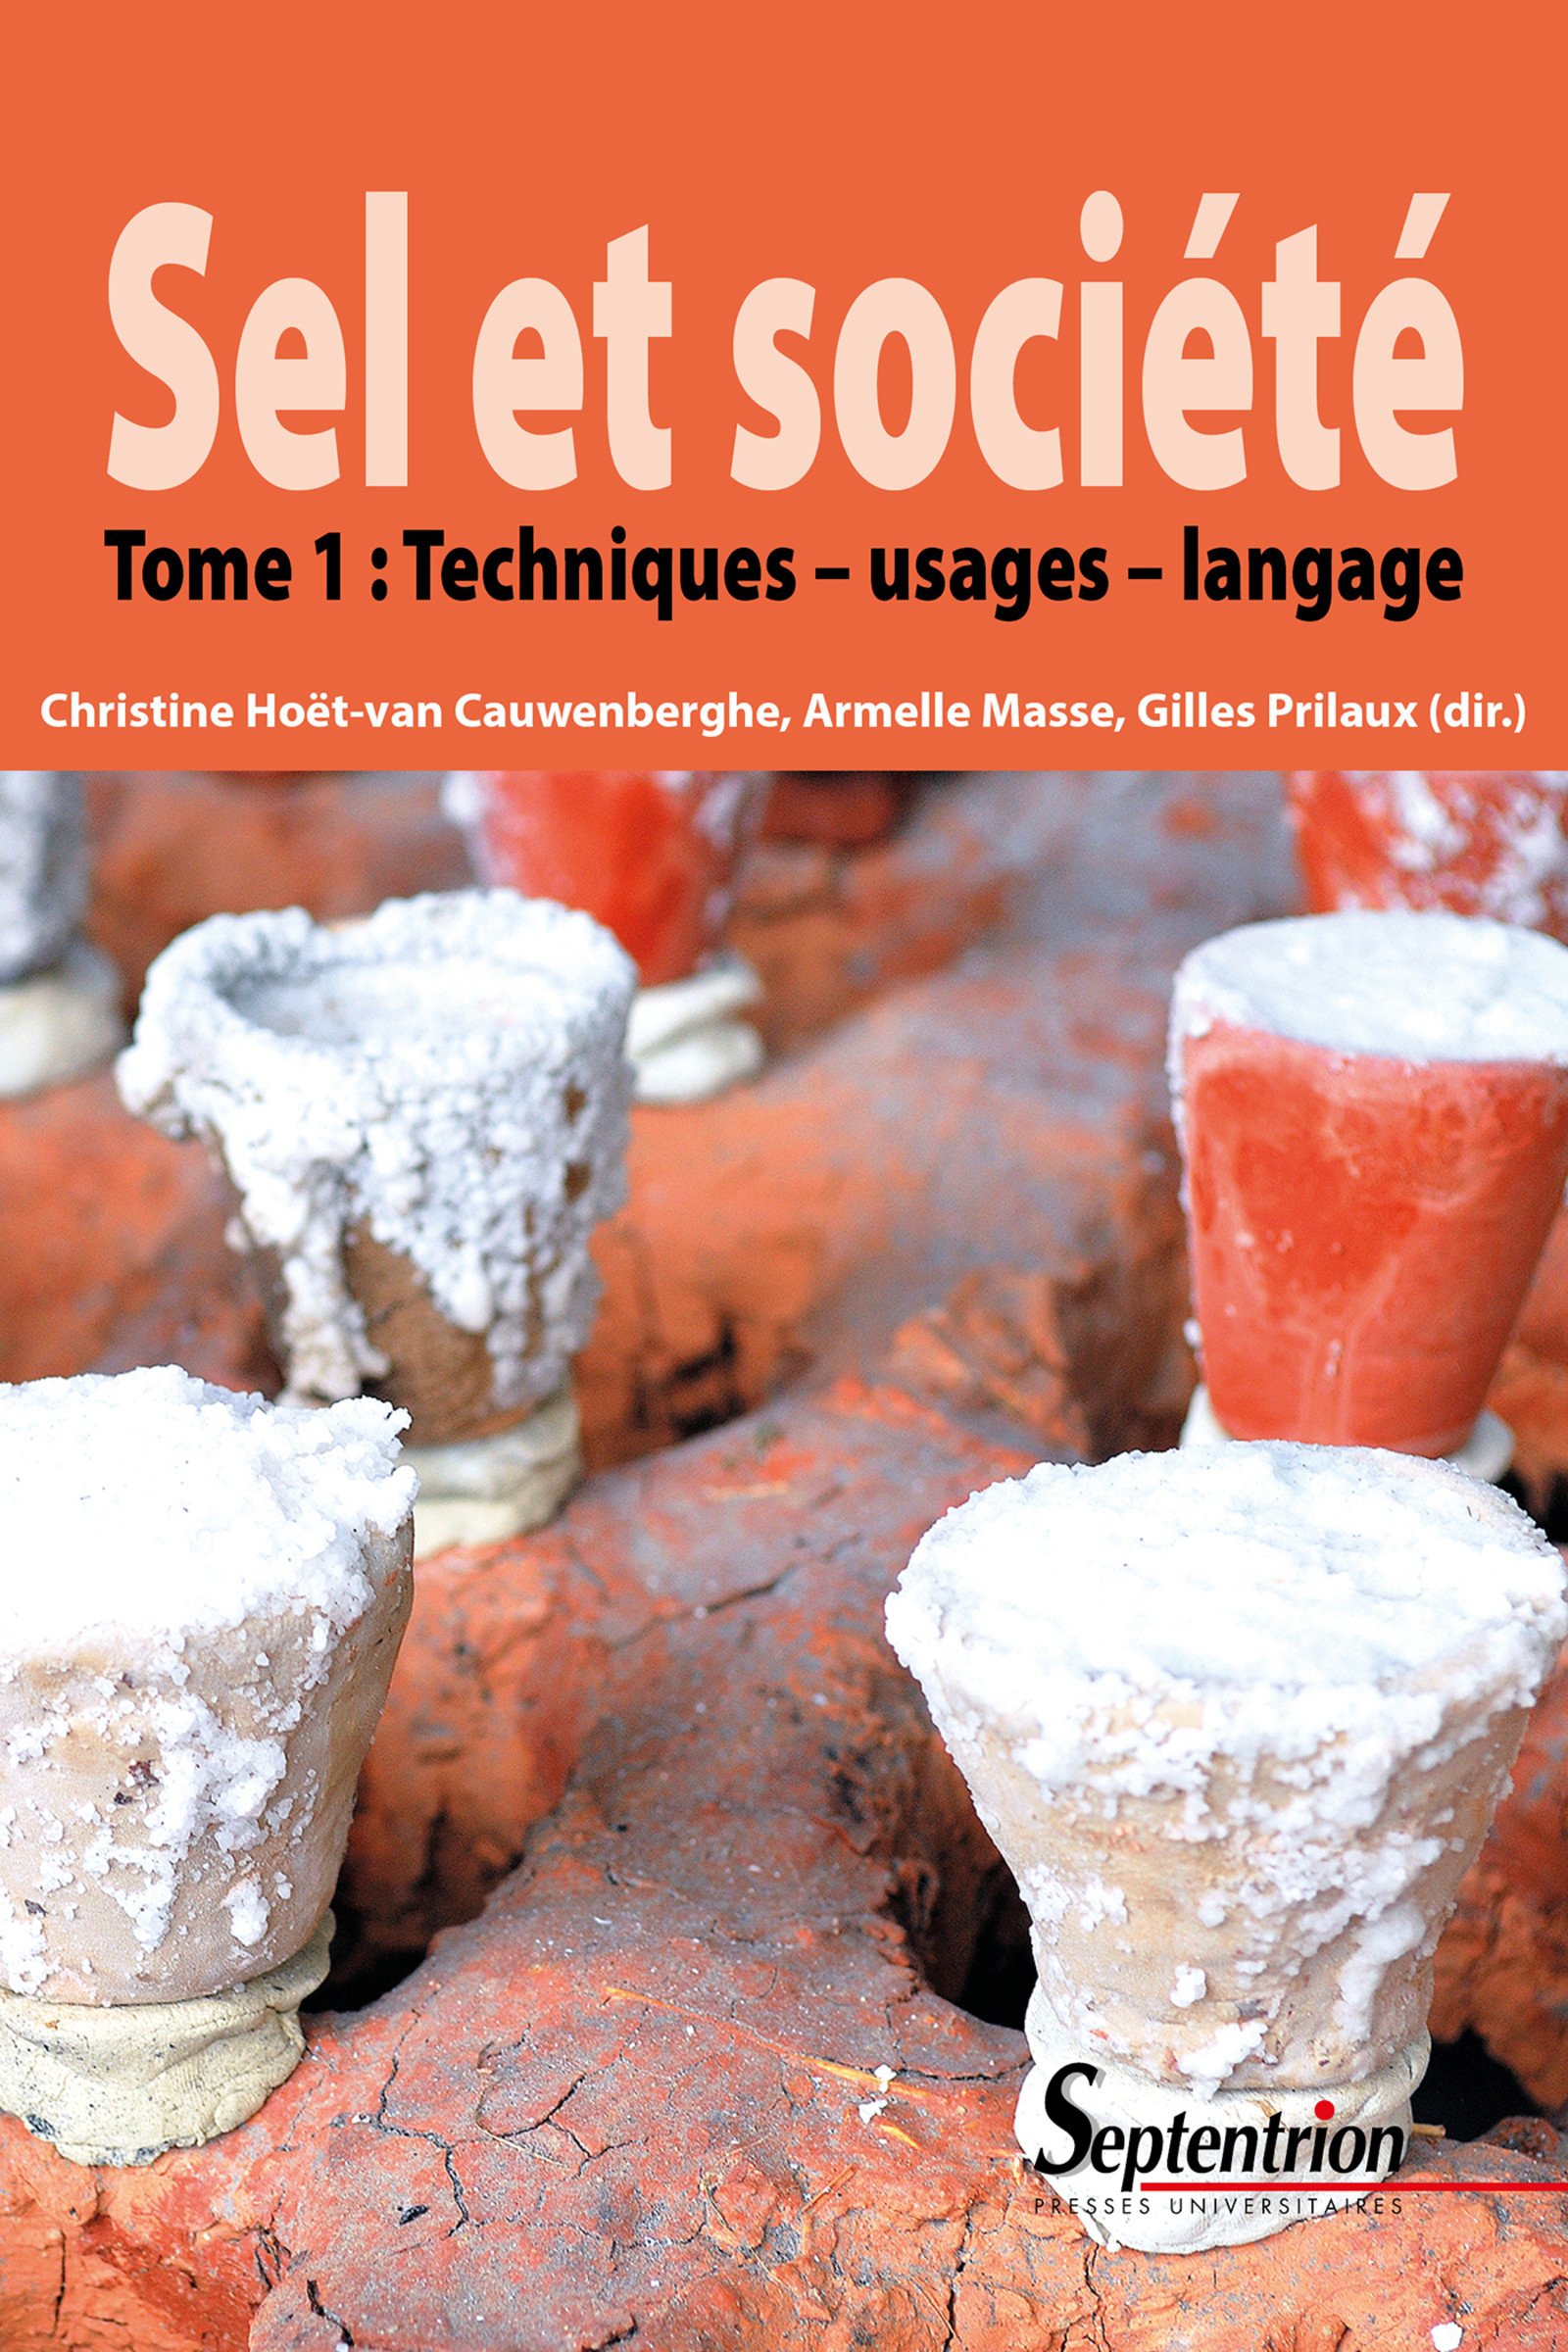 Sel et société. Tome 1: Techniques, usages, langage, 2017, 274 p.